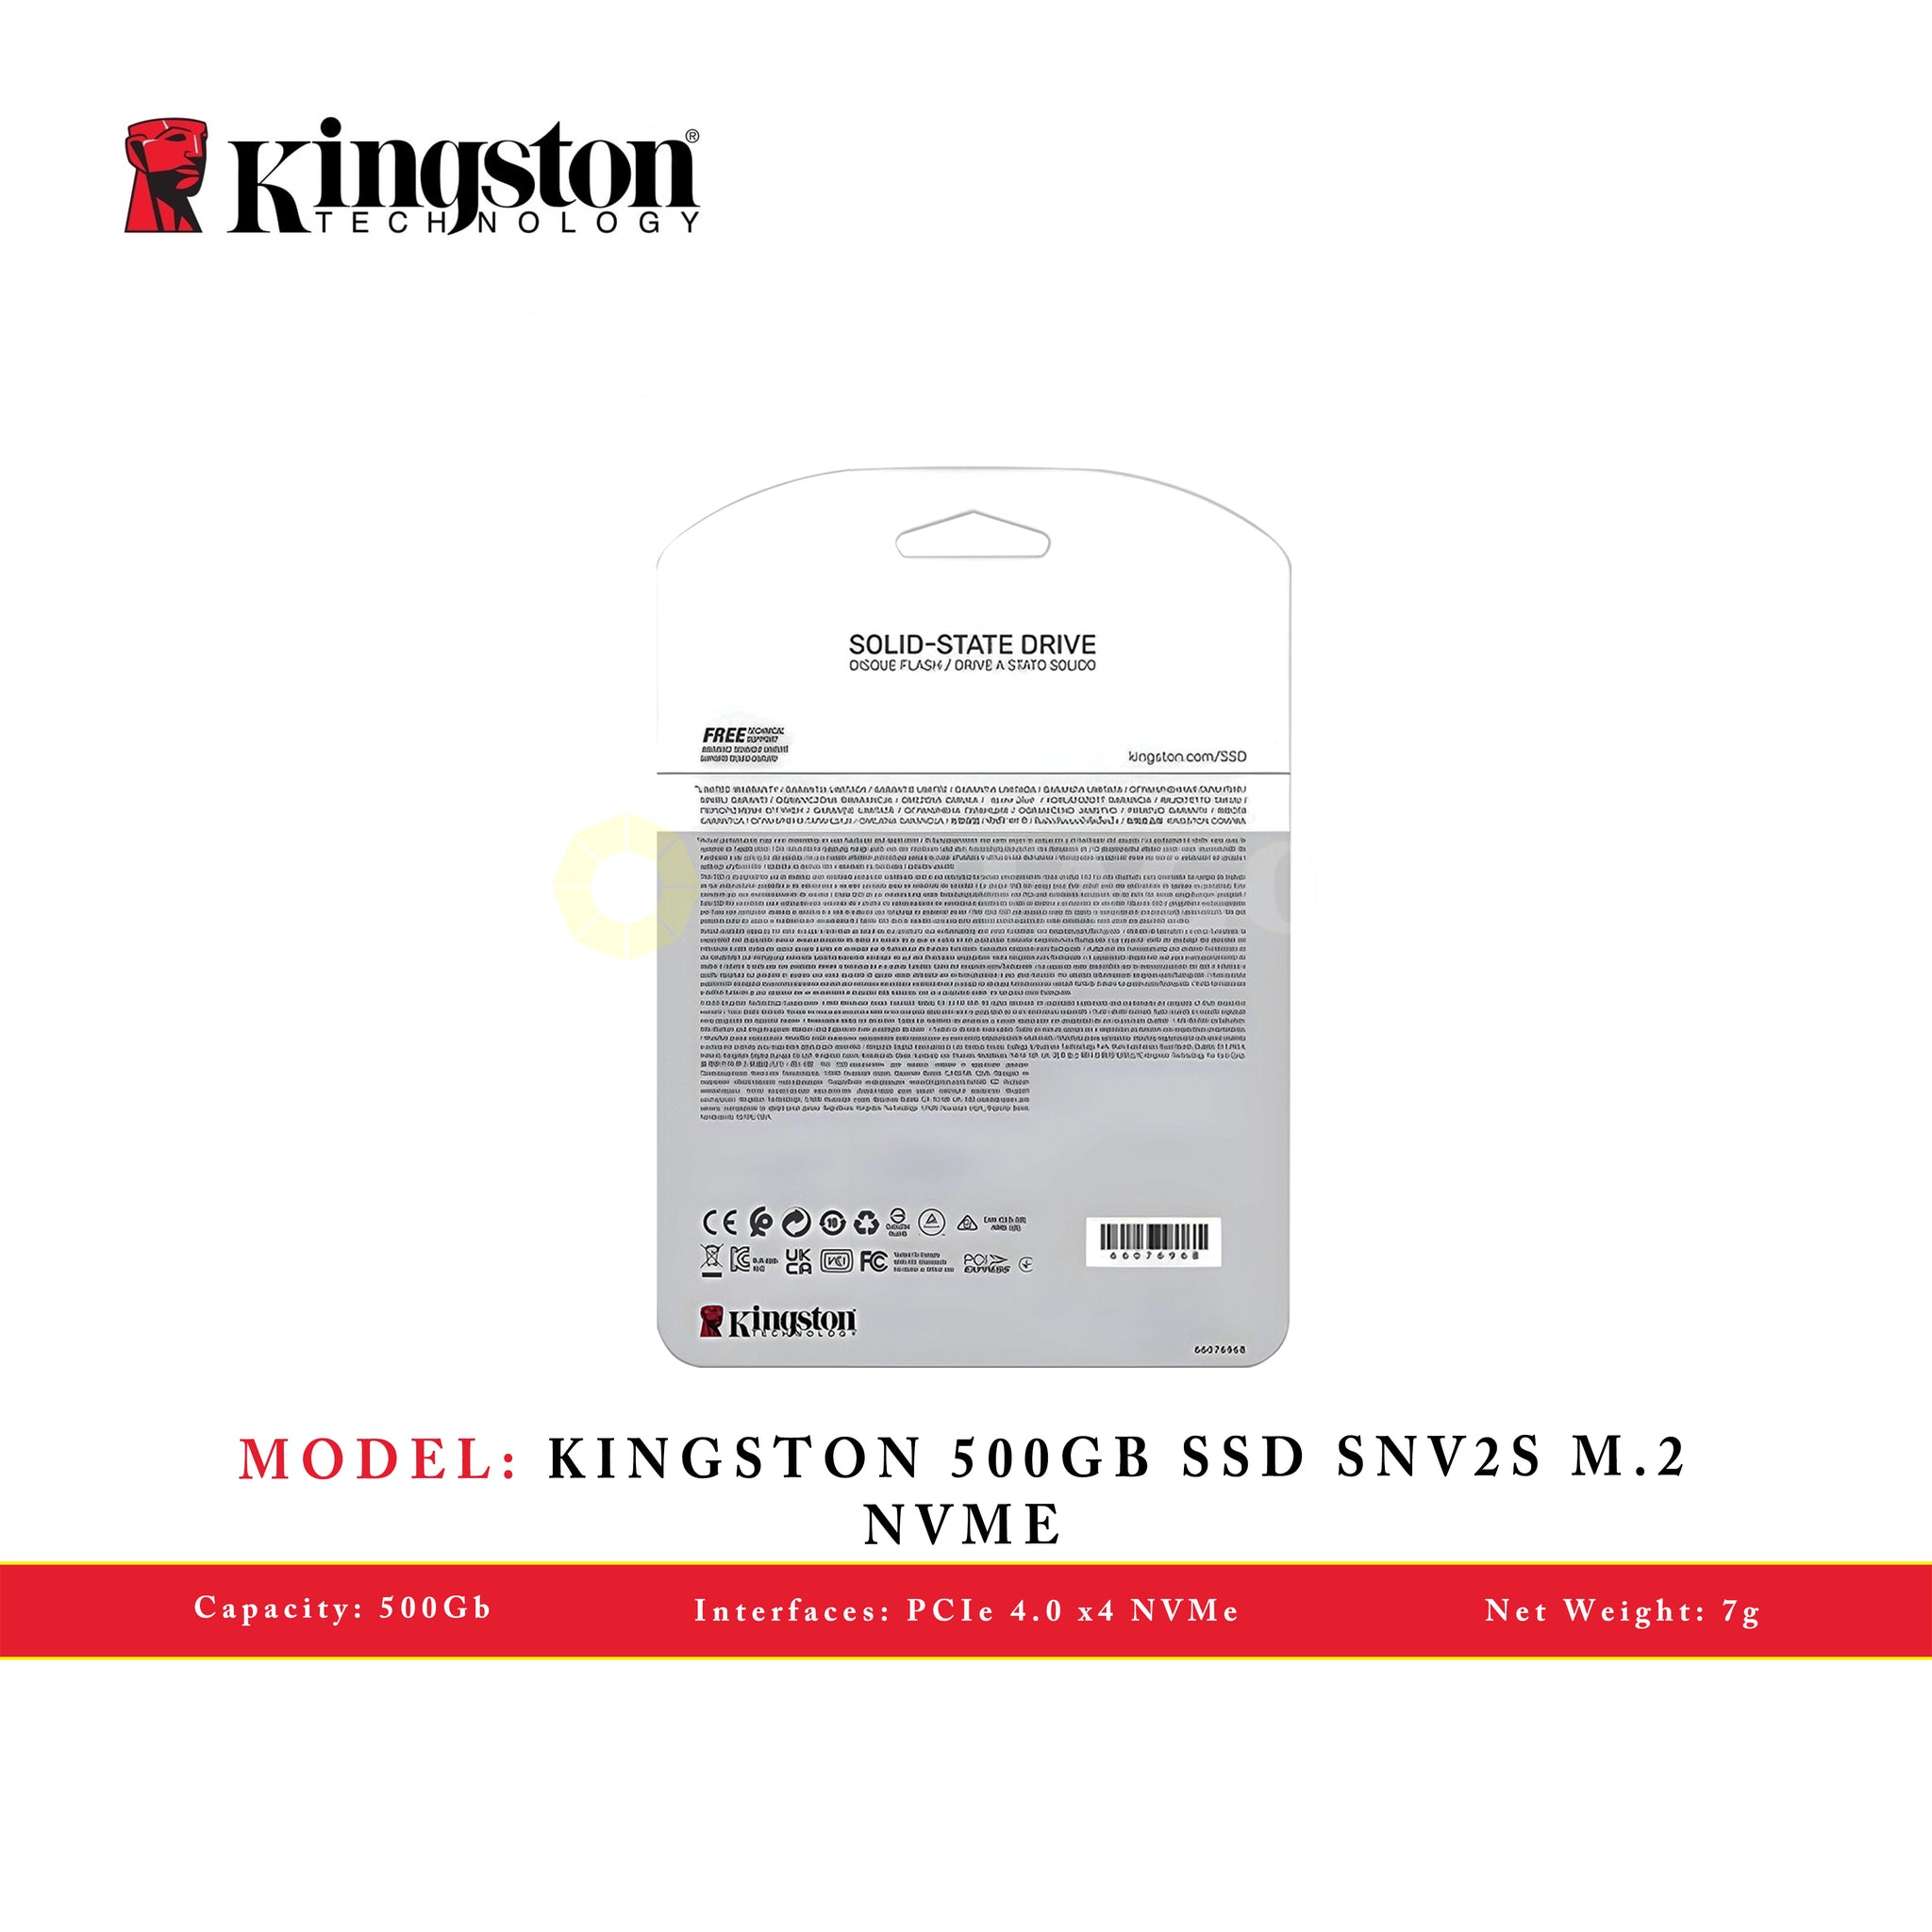 KINGSTON 500GB SSD SNV2S M.2 NVME